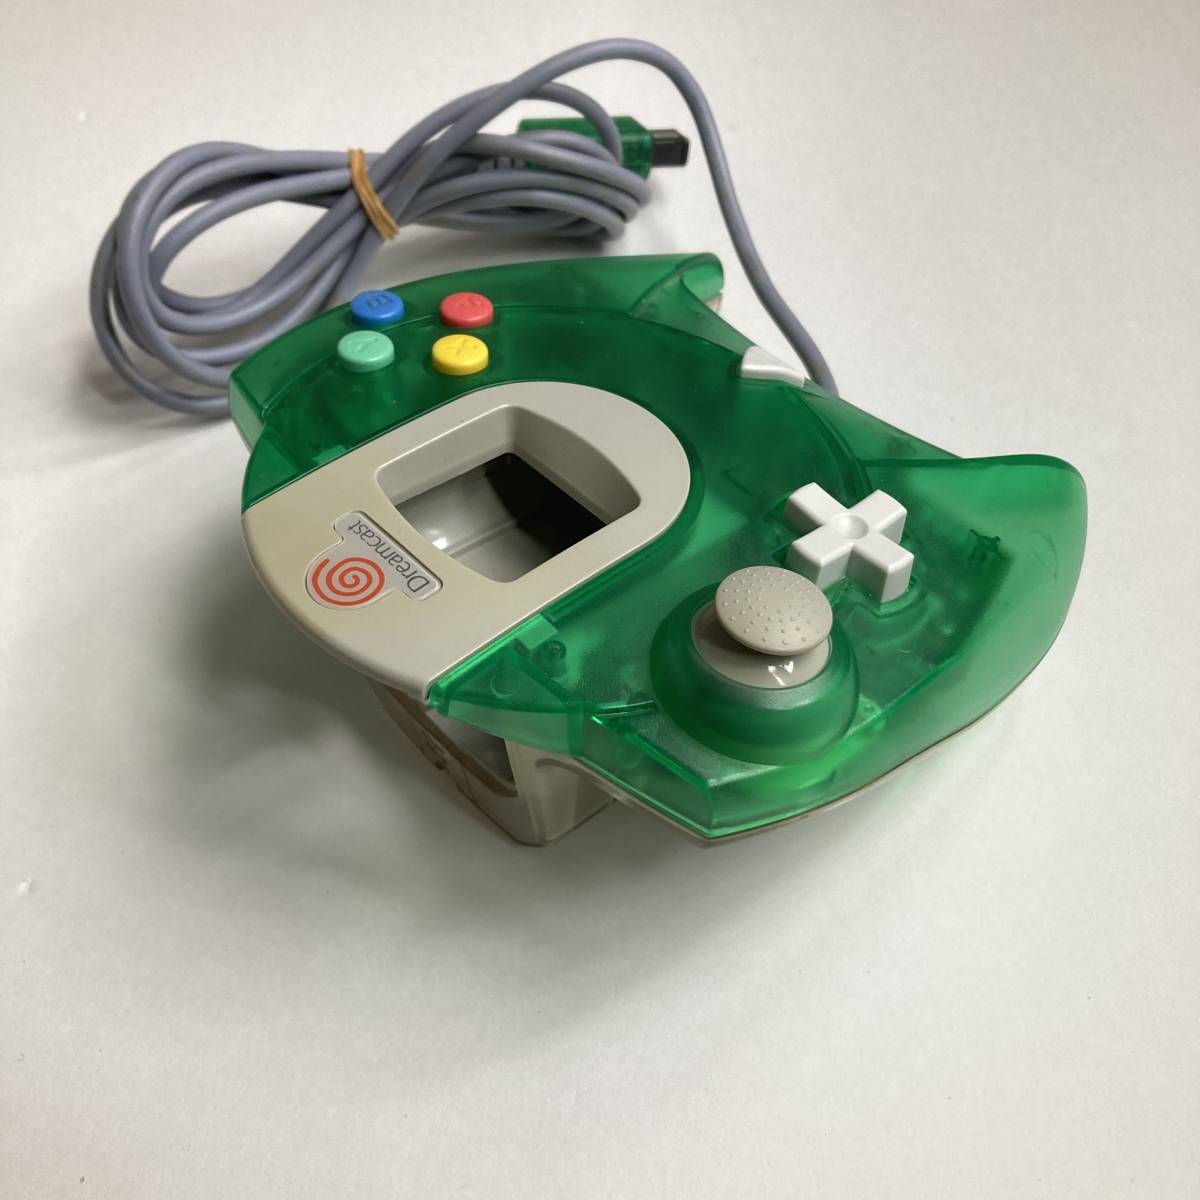 ドリームキャスト用コントローラ グリーン ＆ ブルー/ Lot 2 Dreamcast Controller Pad Aqua Blue & Clear Lime Green HKT-7700 Game Japan